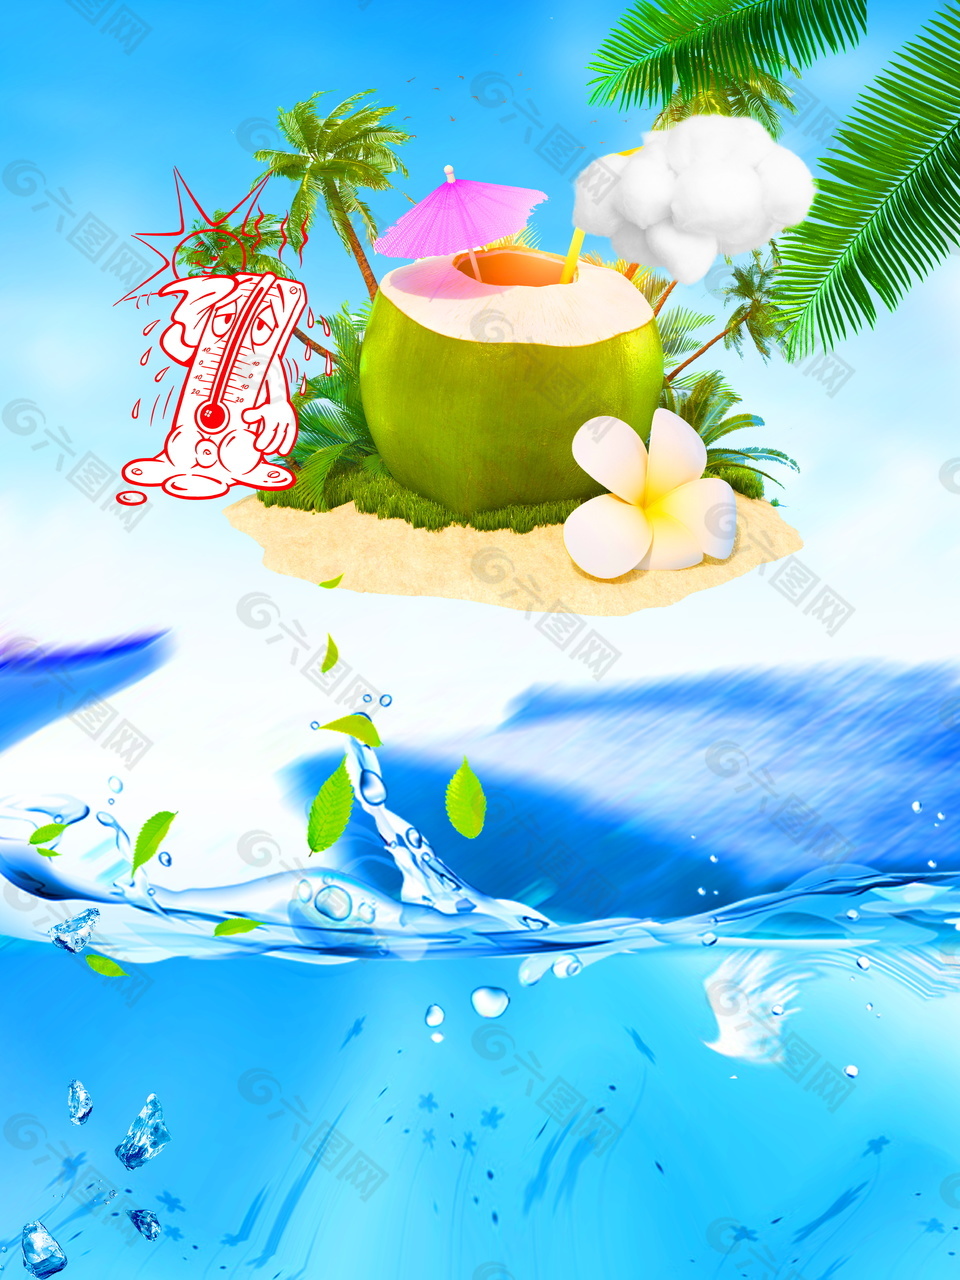 蓝色椰子沙滩高温预警背景素材